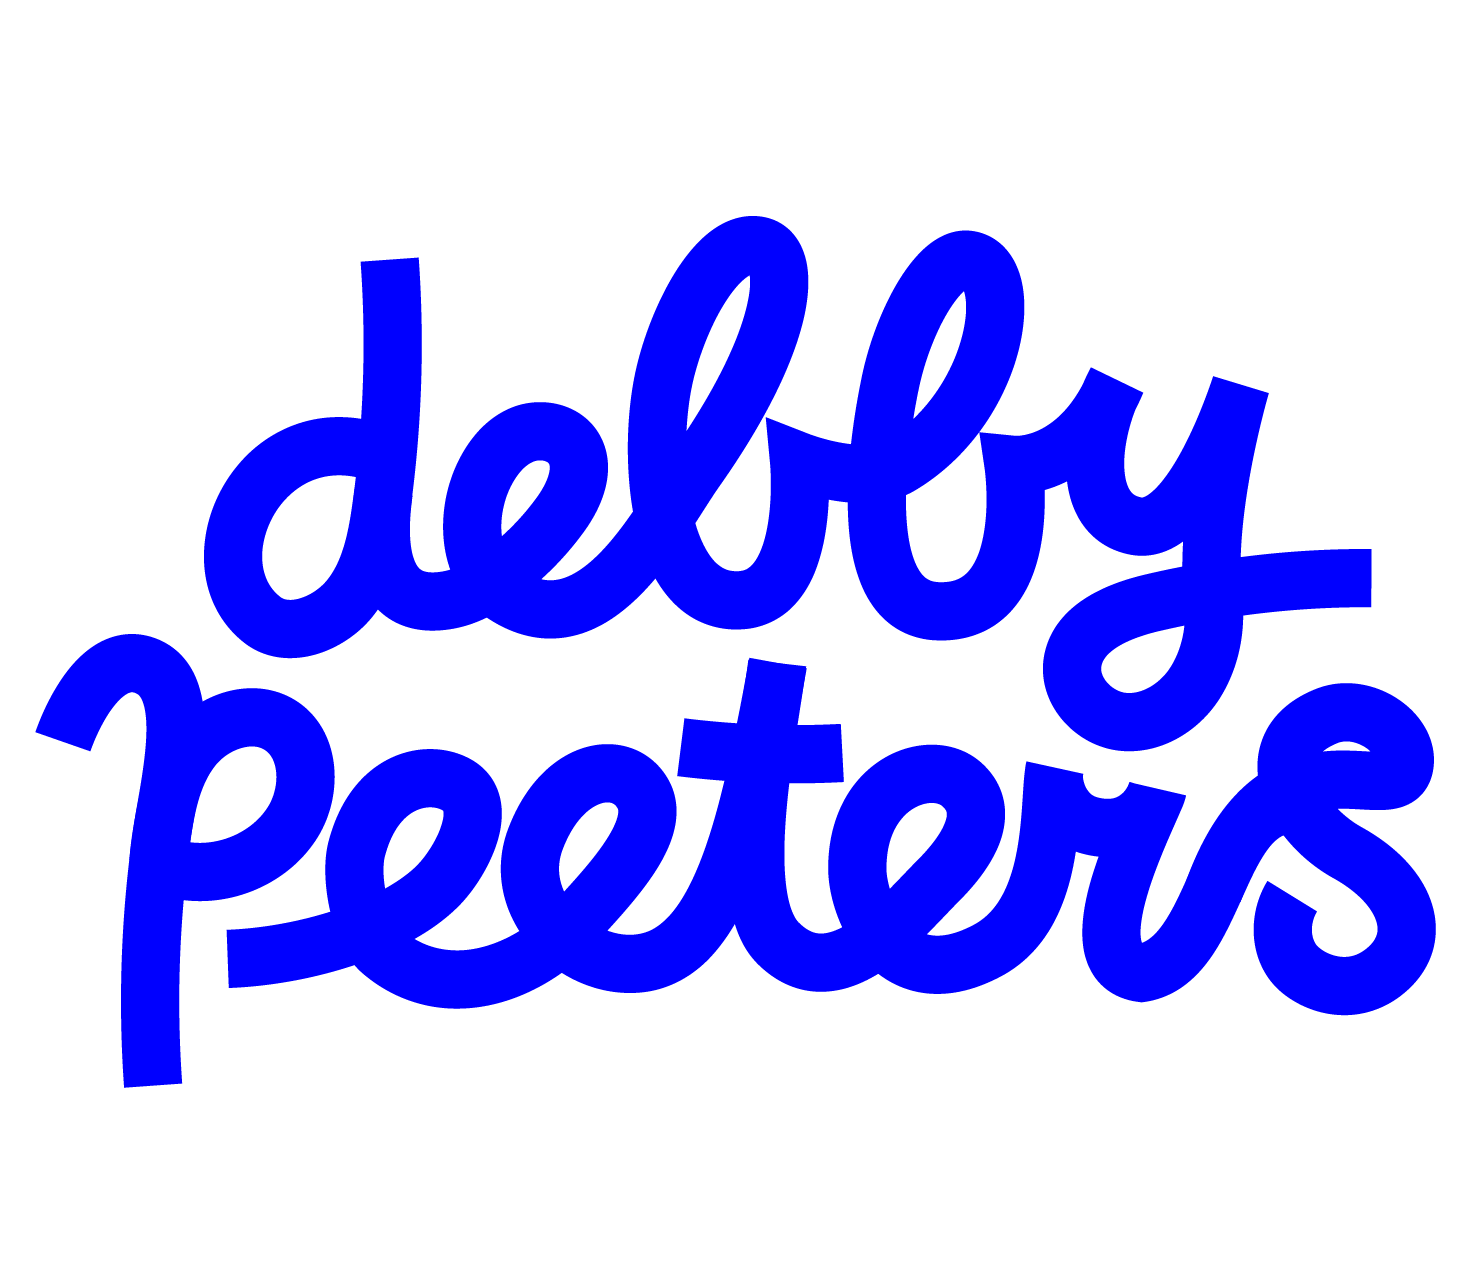 Debby Peeters